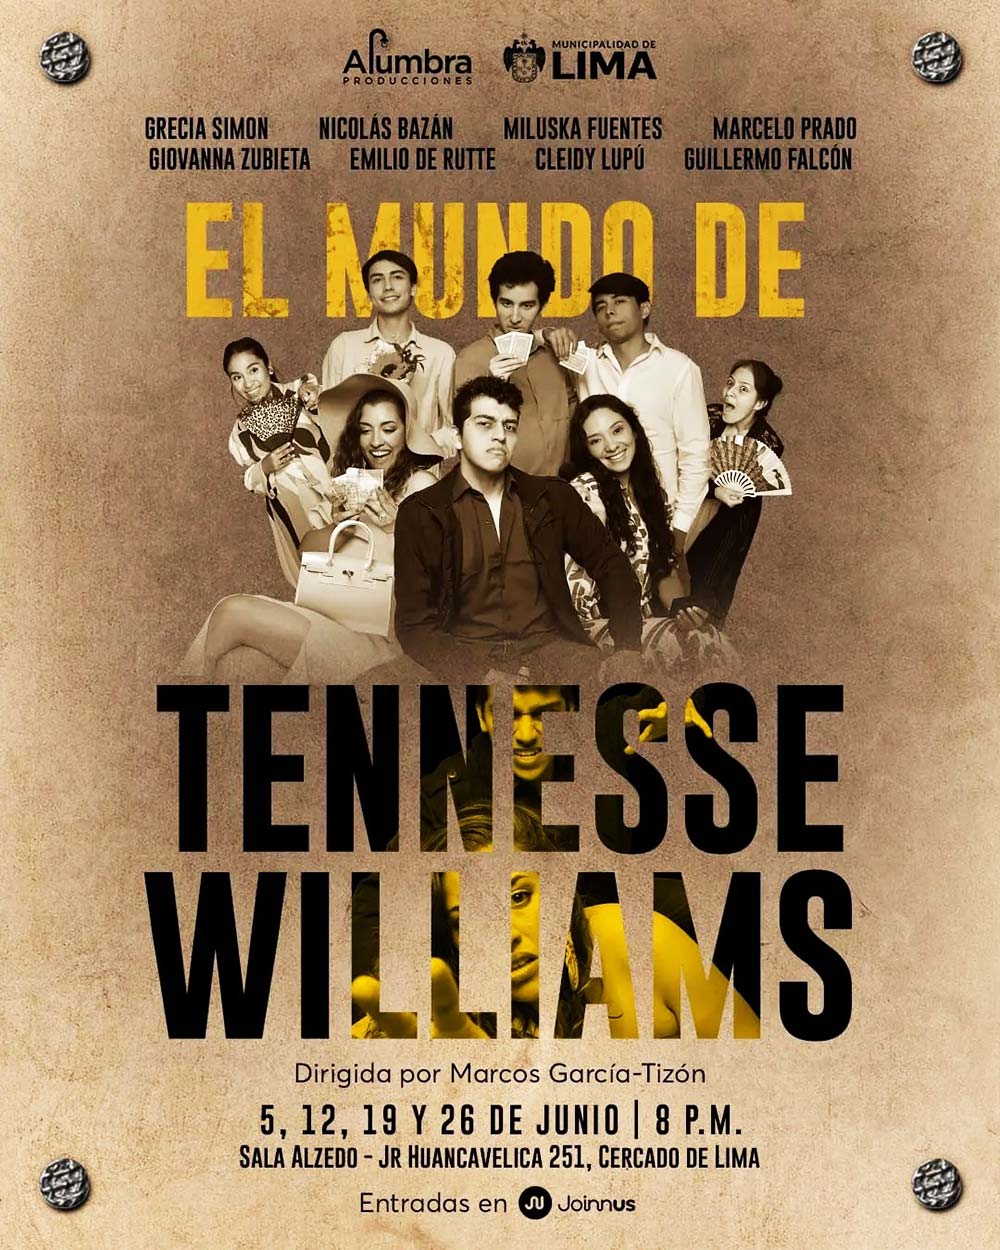 Afiche obra "El mundo de Tennesse Williams"